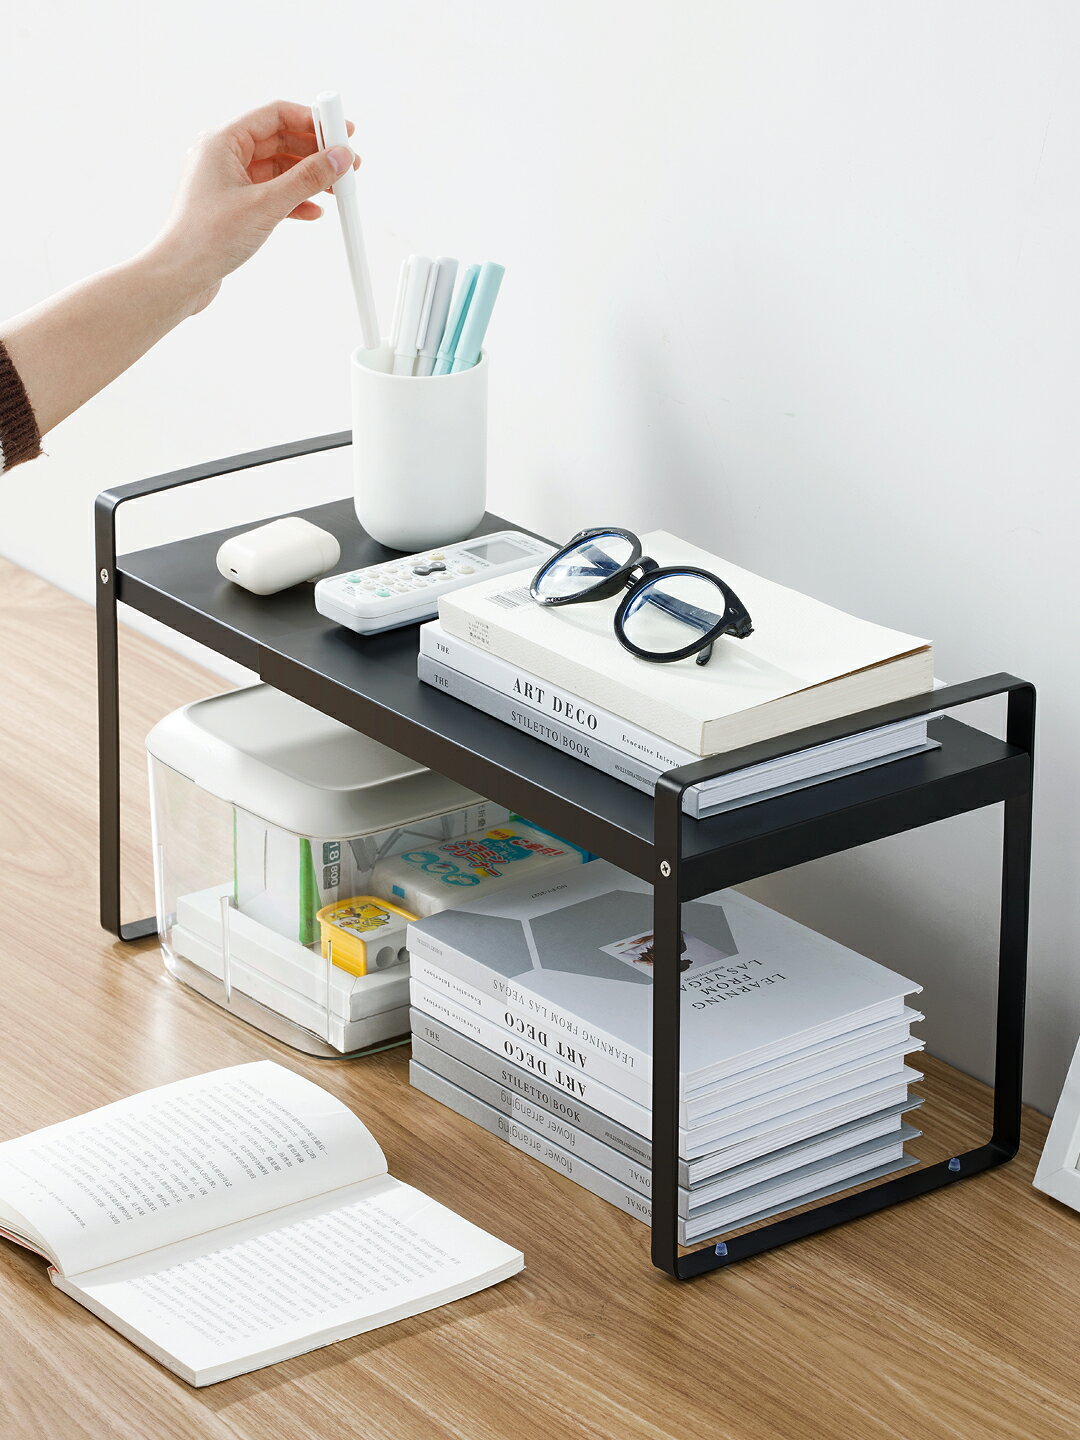 打印機架子 簡易書架置物架辦公室桌面打印機架子伸縮多層宿舍書桌整理收納架【MJ11735】